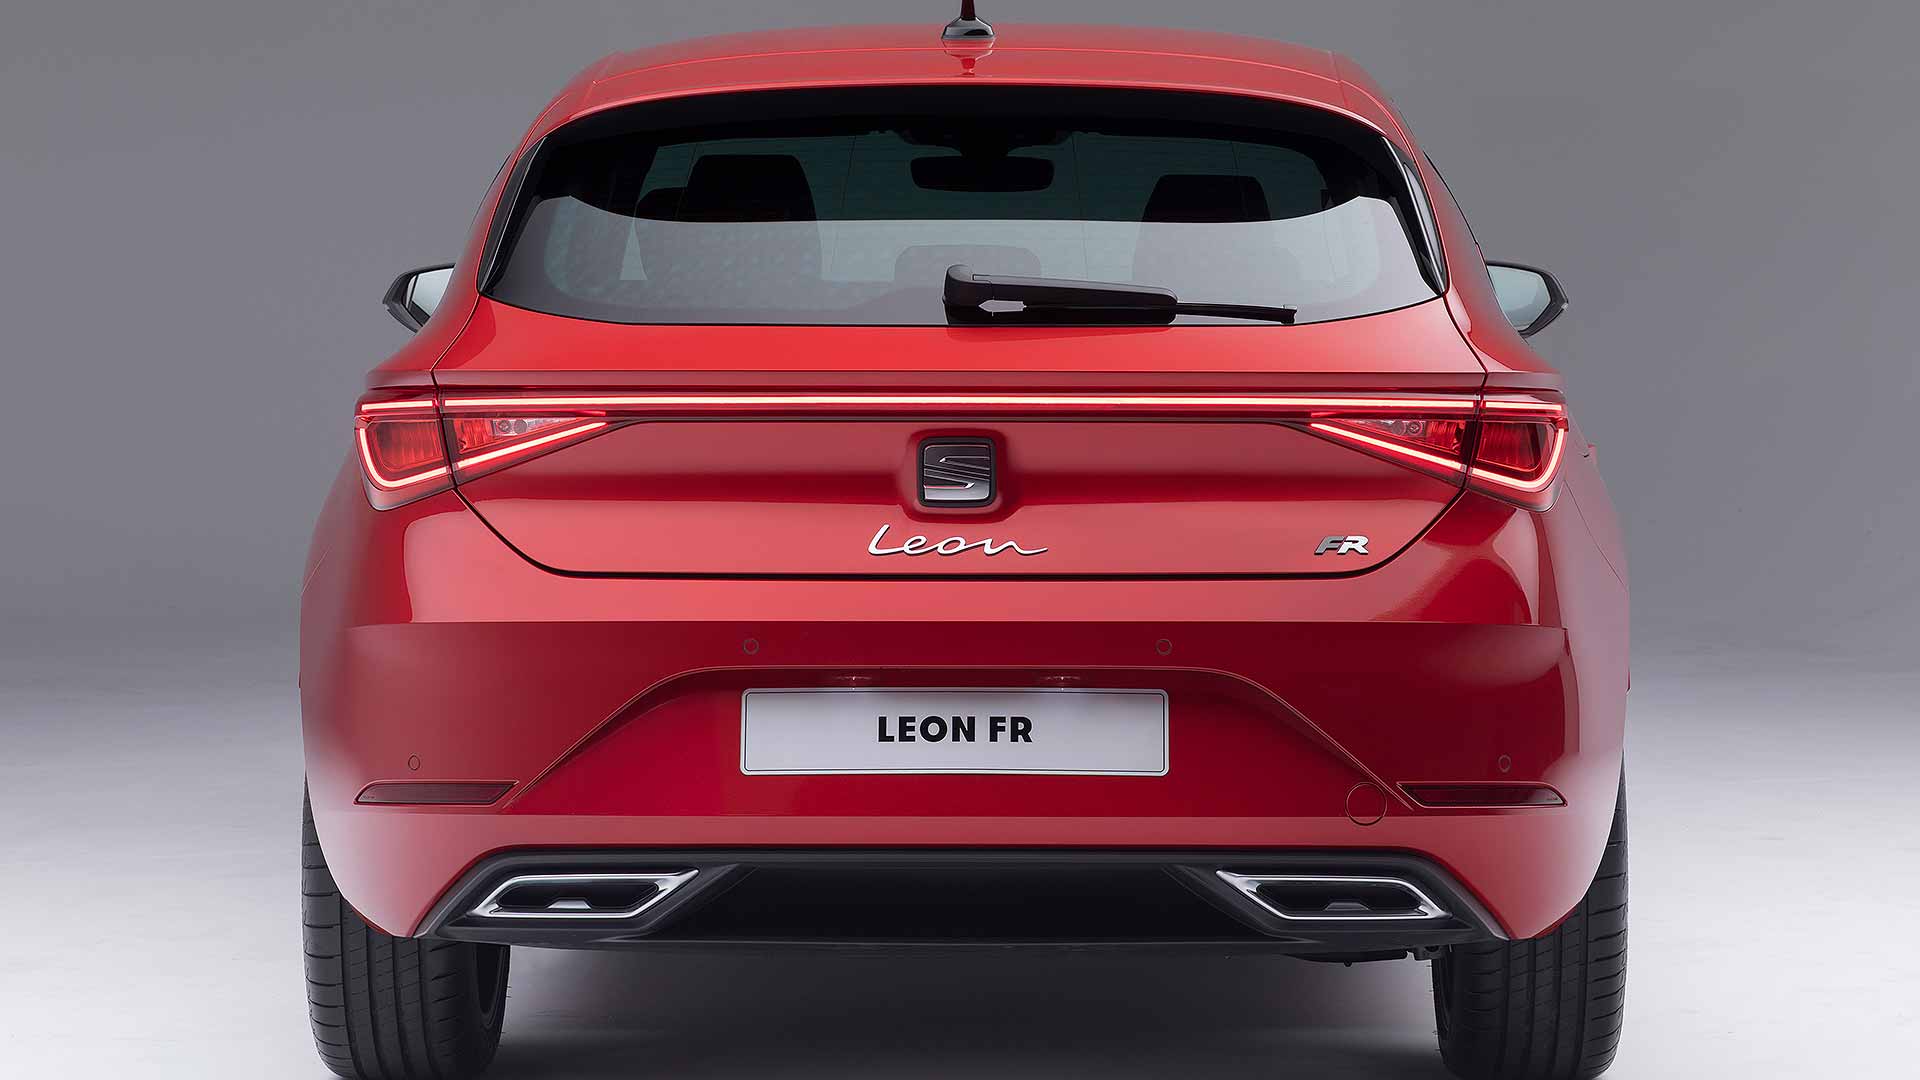 2020 Seat Leon revealed